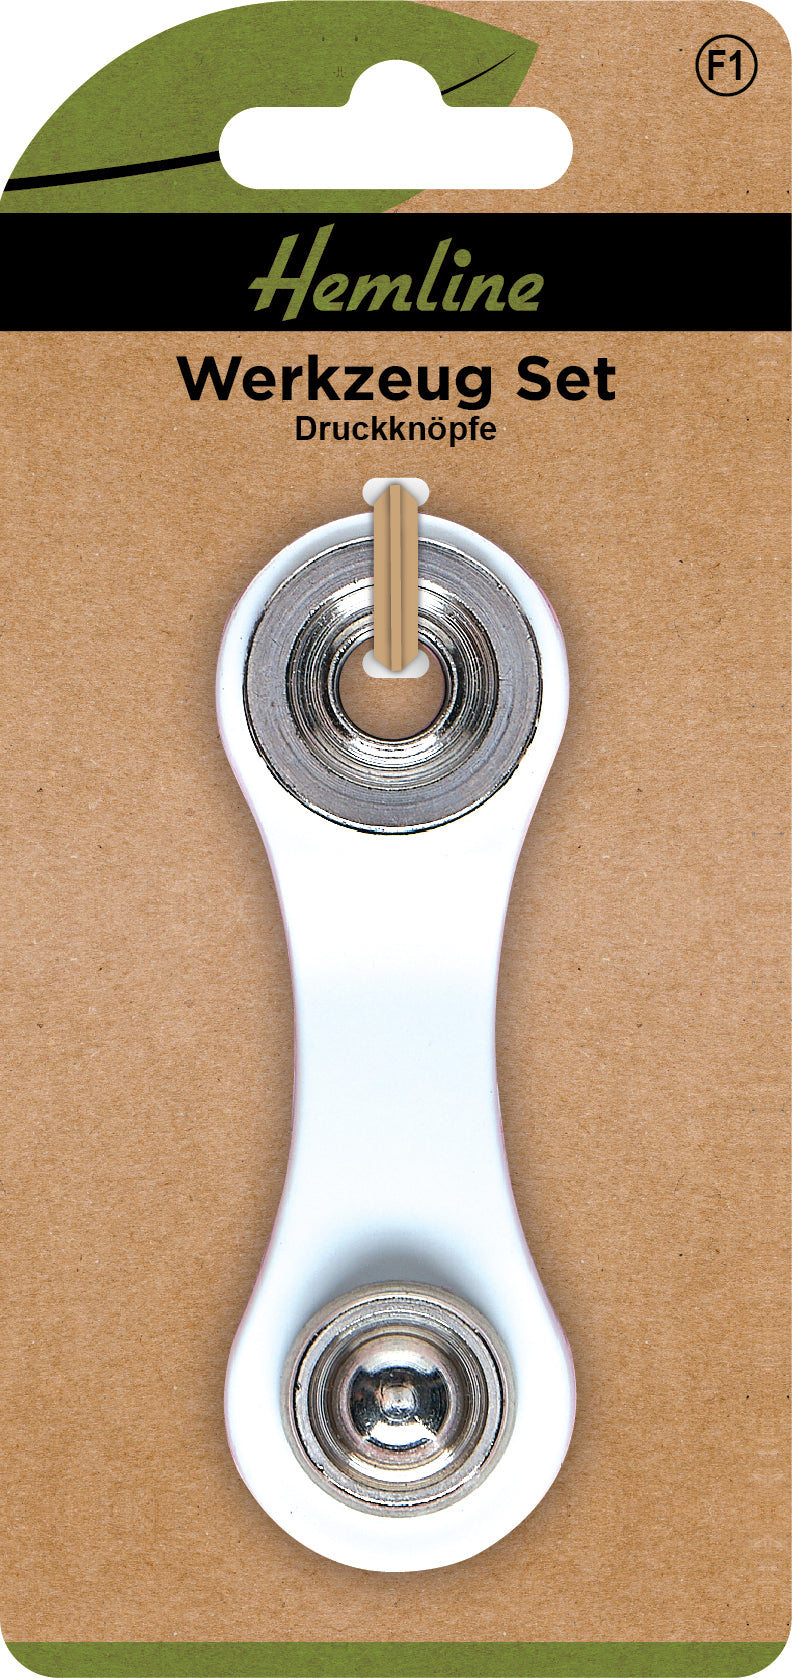 Druckknopf Werkzeug Set 10.5 mm